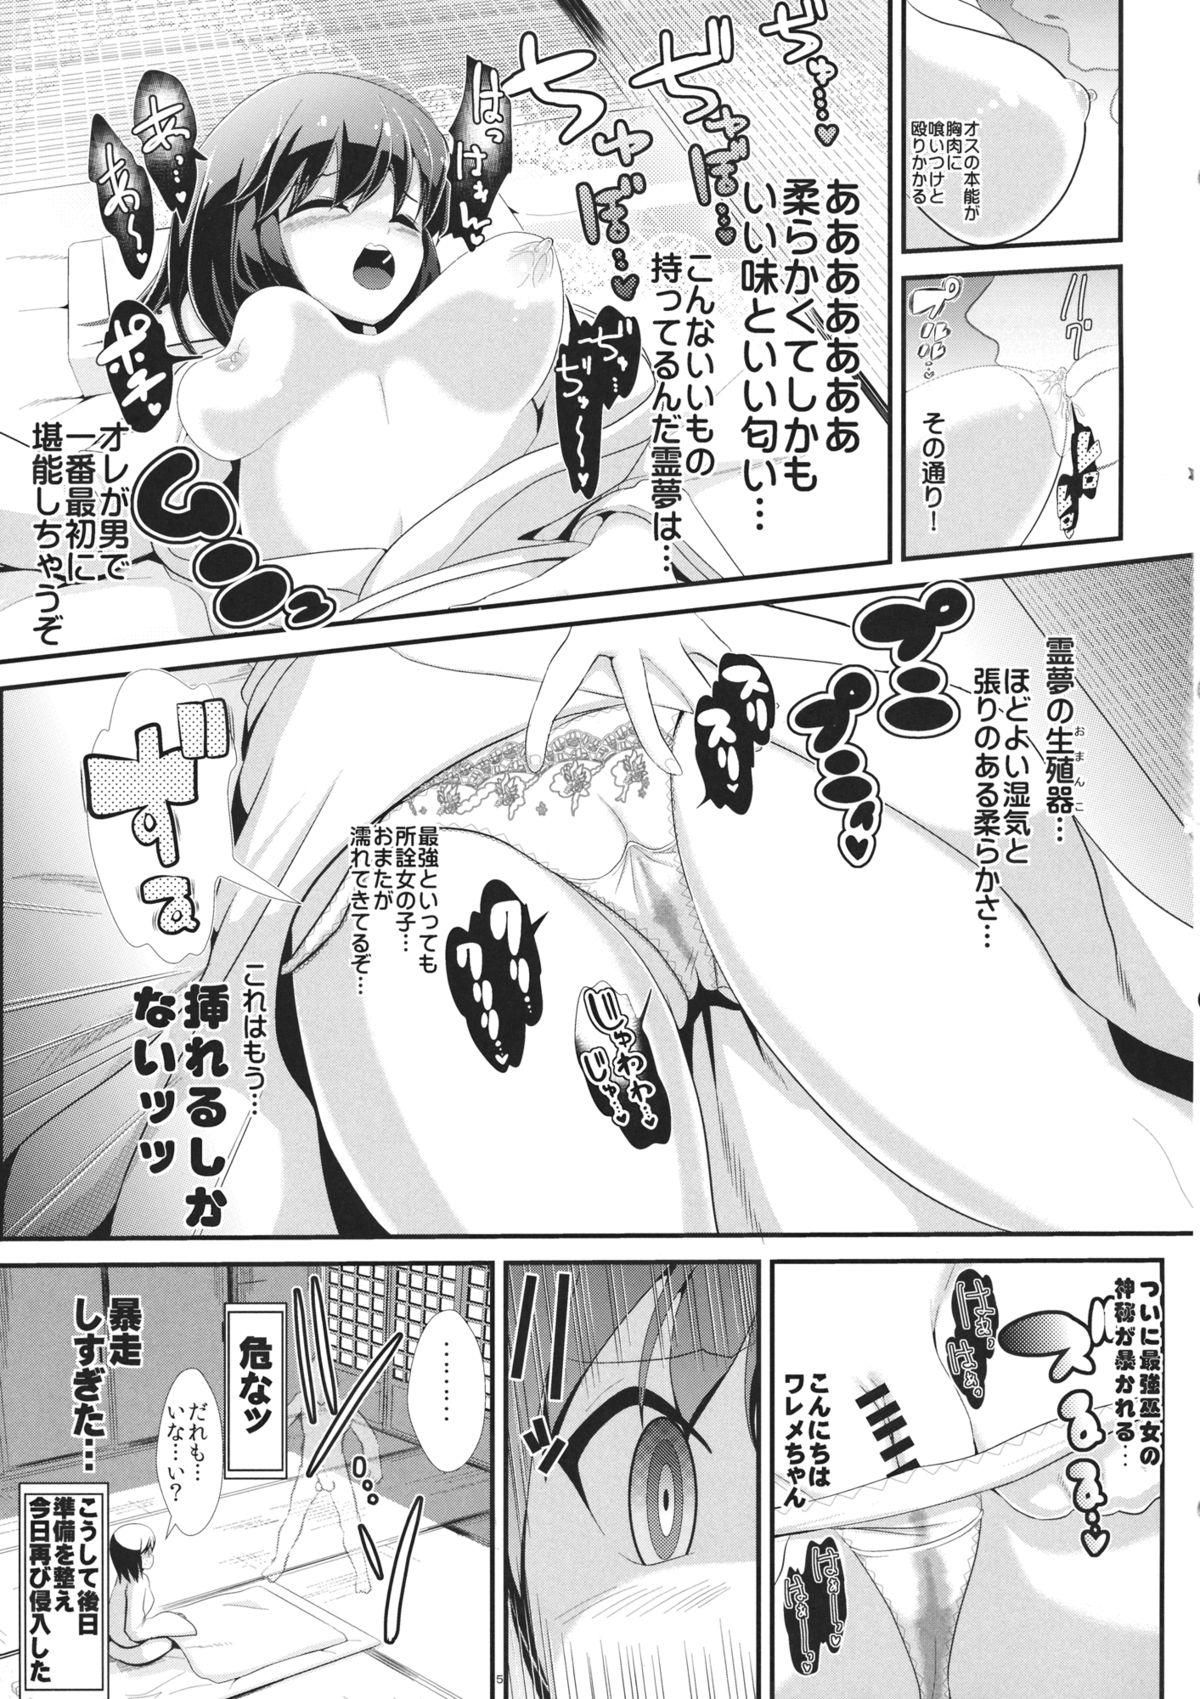 Tanga Touhou Toumei Ningen 4 Shinnyuu Reimu n Chi - Touhou project Flogging - Page 6